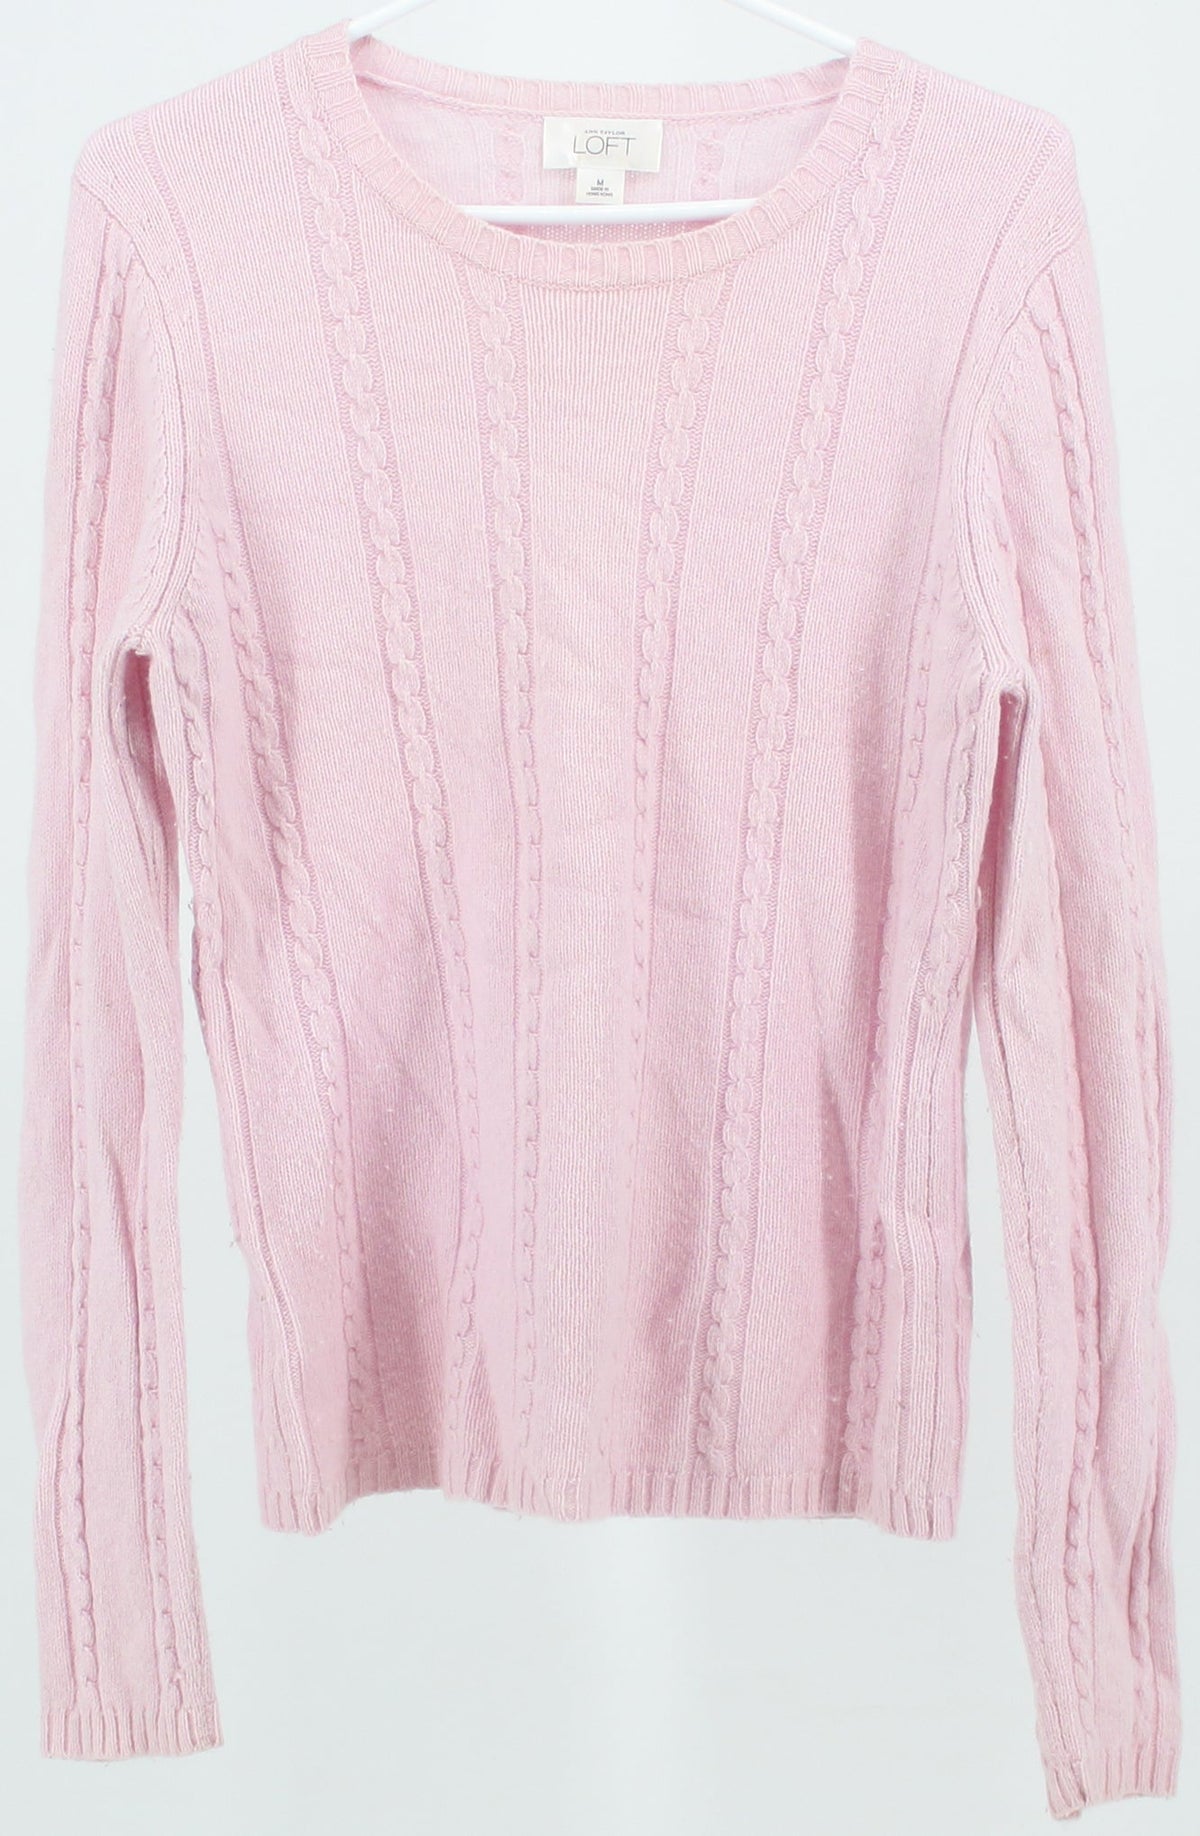 Ann Taylor Loft Light Pink Long Sleeve Sweater